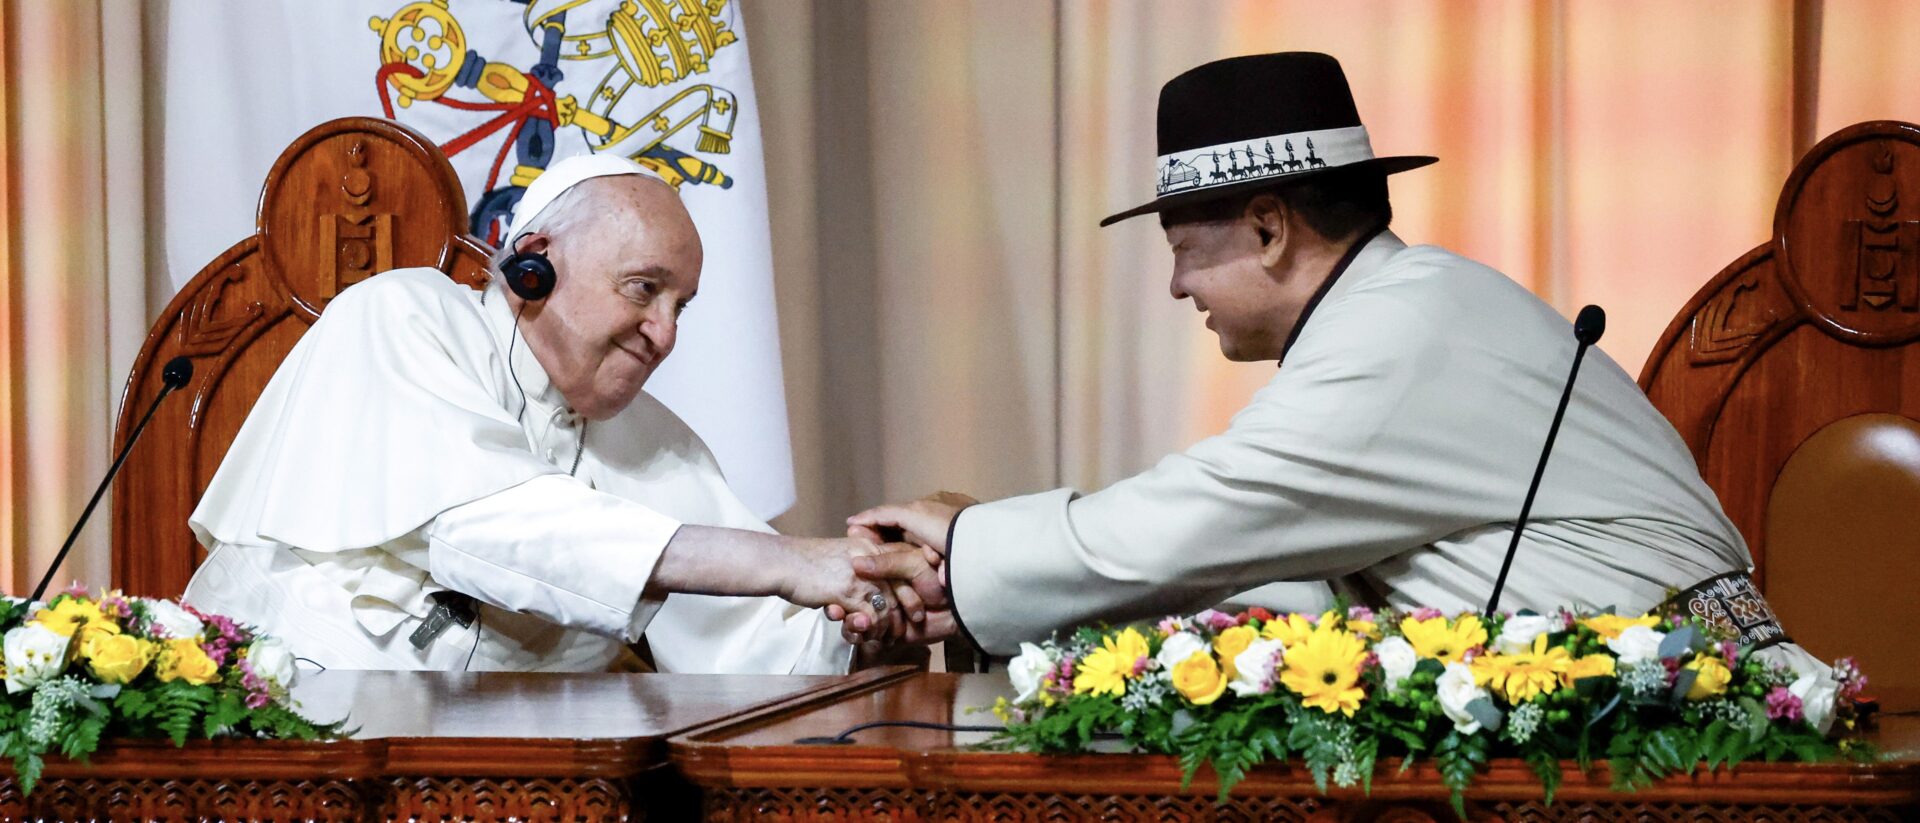 Papst Franziskus und Ukhnaagiin Khürelsükh, Präsident der Mongolei, geben sich die Hände.